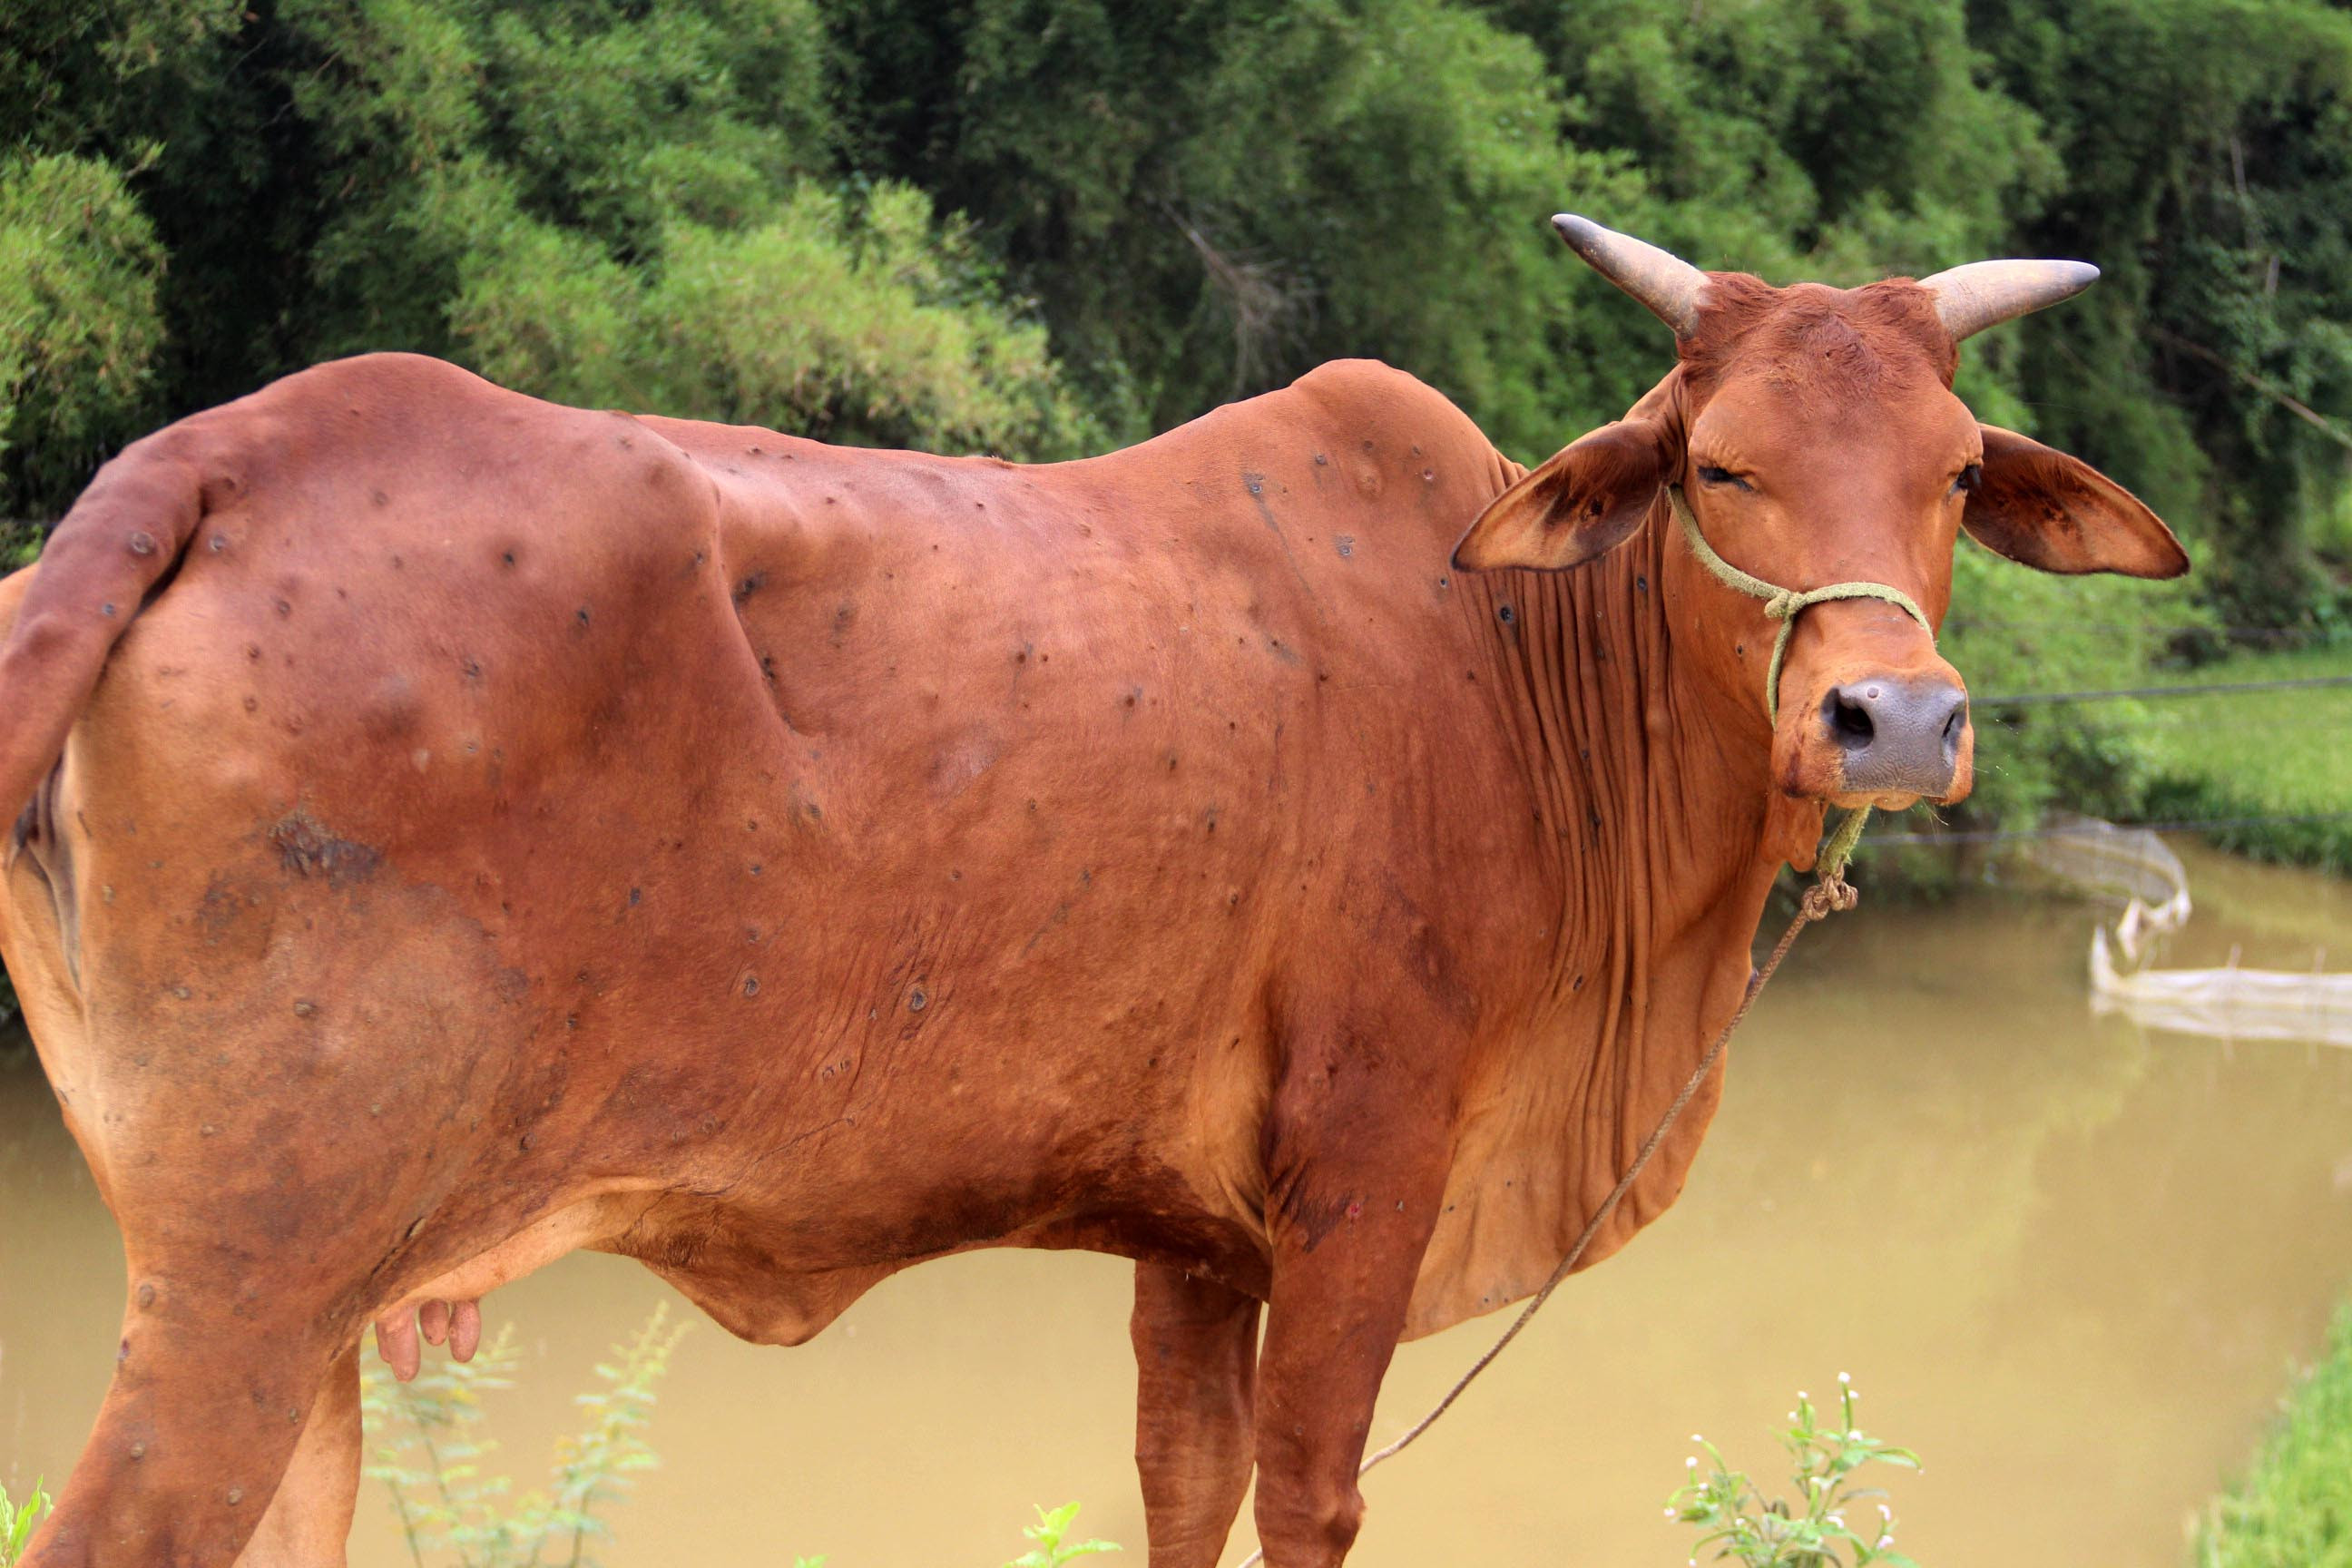 Một số con bò bị bệnh nặng, lở loét khắp người nhưng không được nhốt để điều trị mà thả ra ngoài môi trường. Ảnh: Q.A